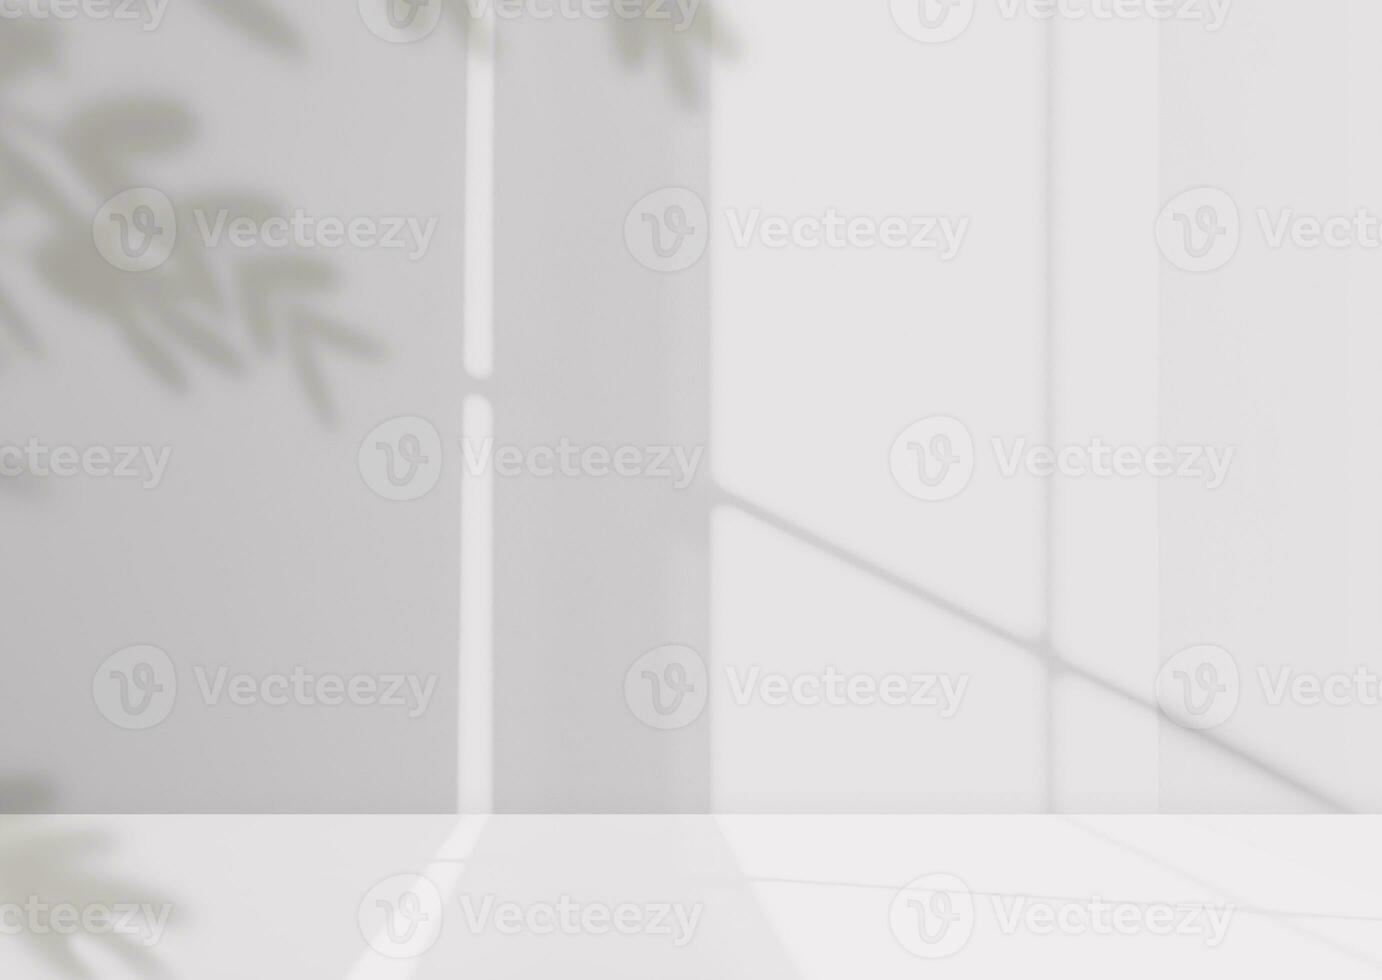 Contexte blanc mur studio avec ombre feuilles,lumière.vide béton cuisine pièce avec podium afficher de Haut étagère barre, toile de fond ciment mur avec fenêtre réflexion sur surface texture photo